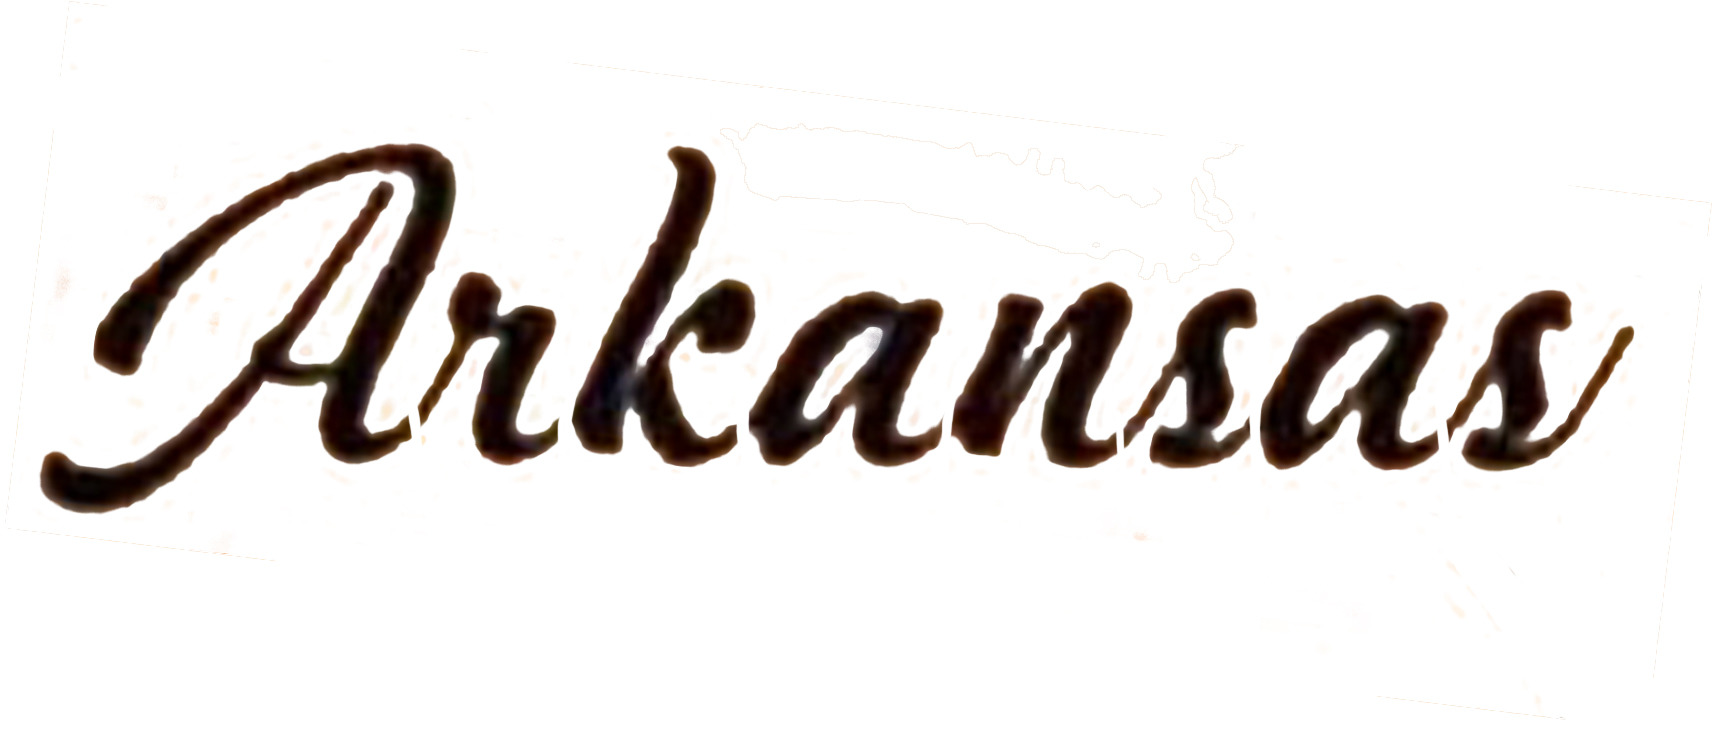 Arkansas (Script font)